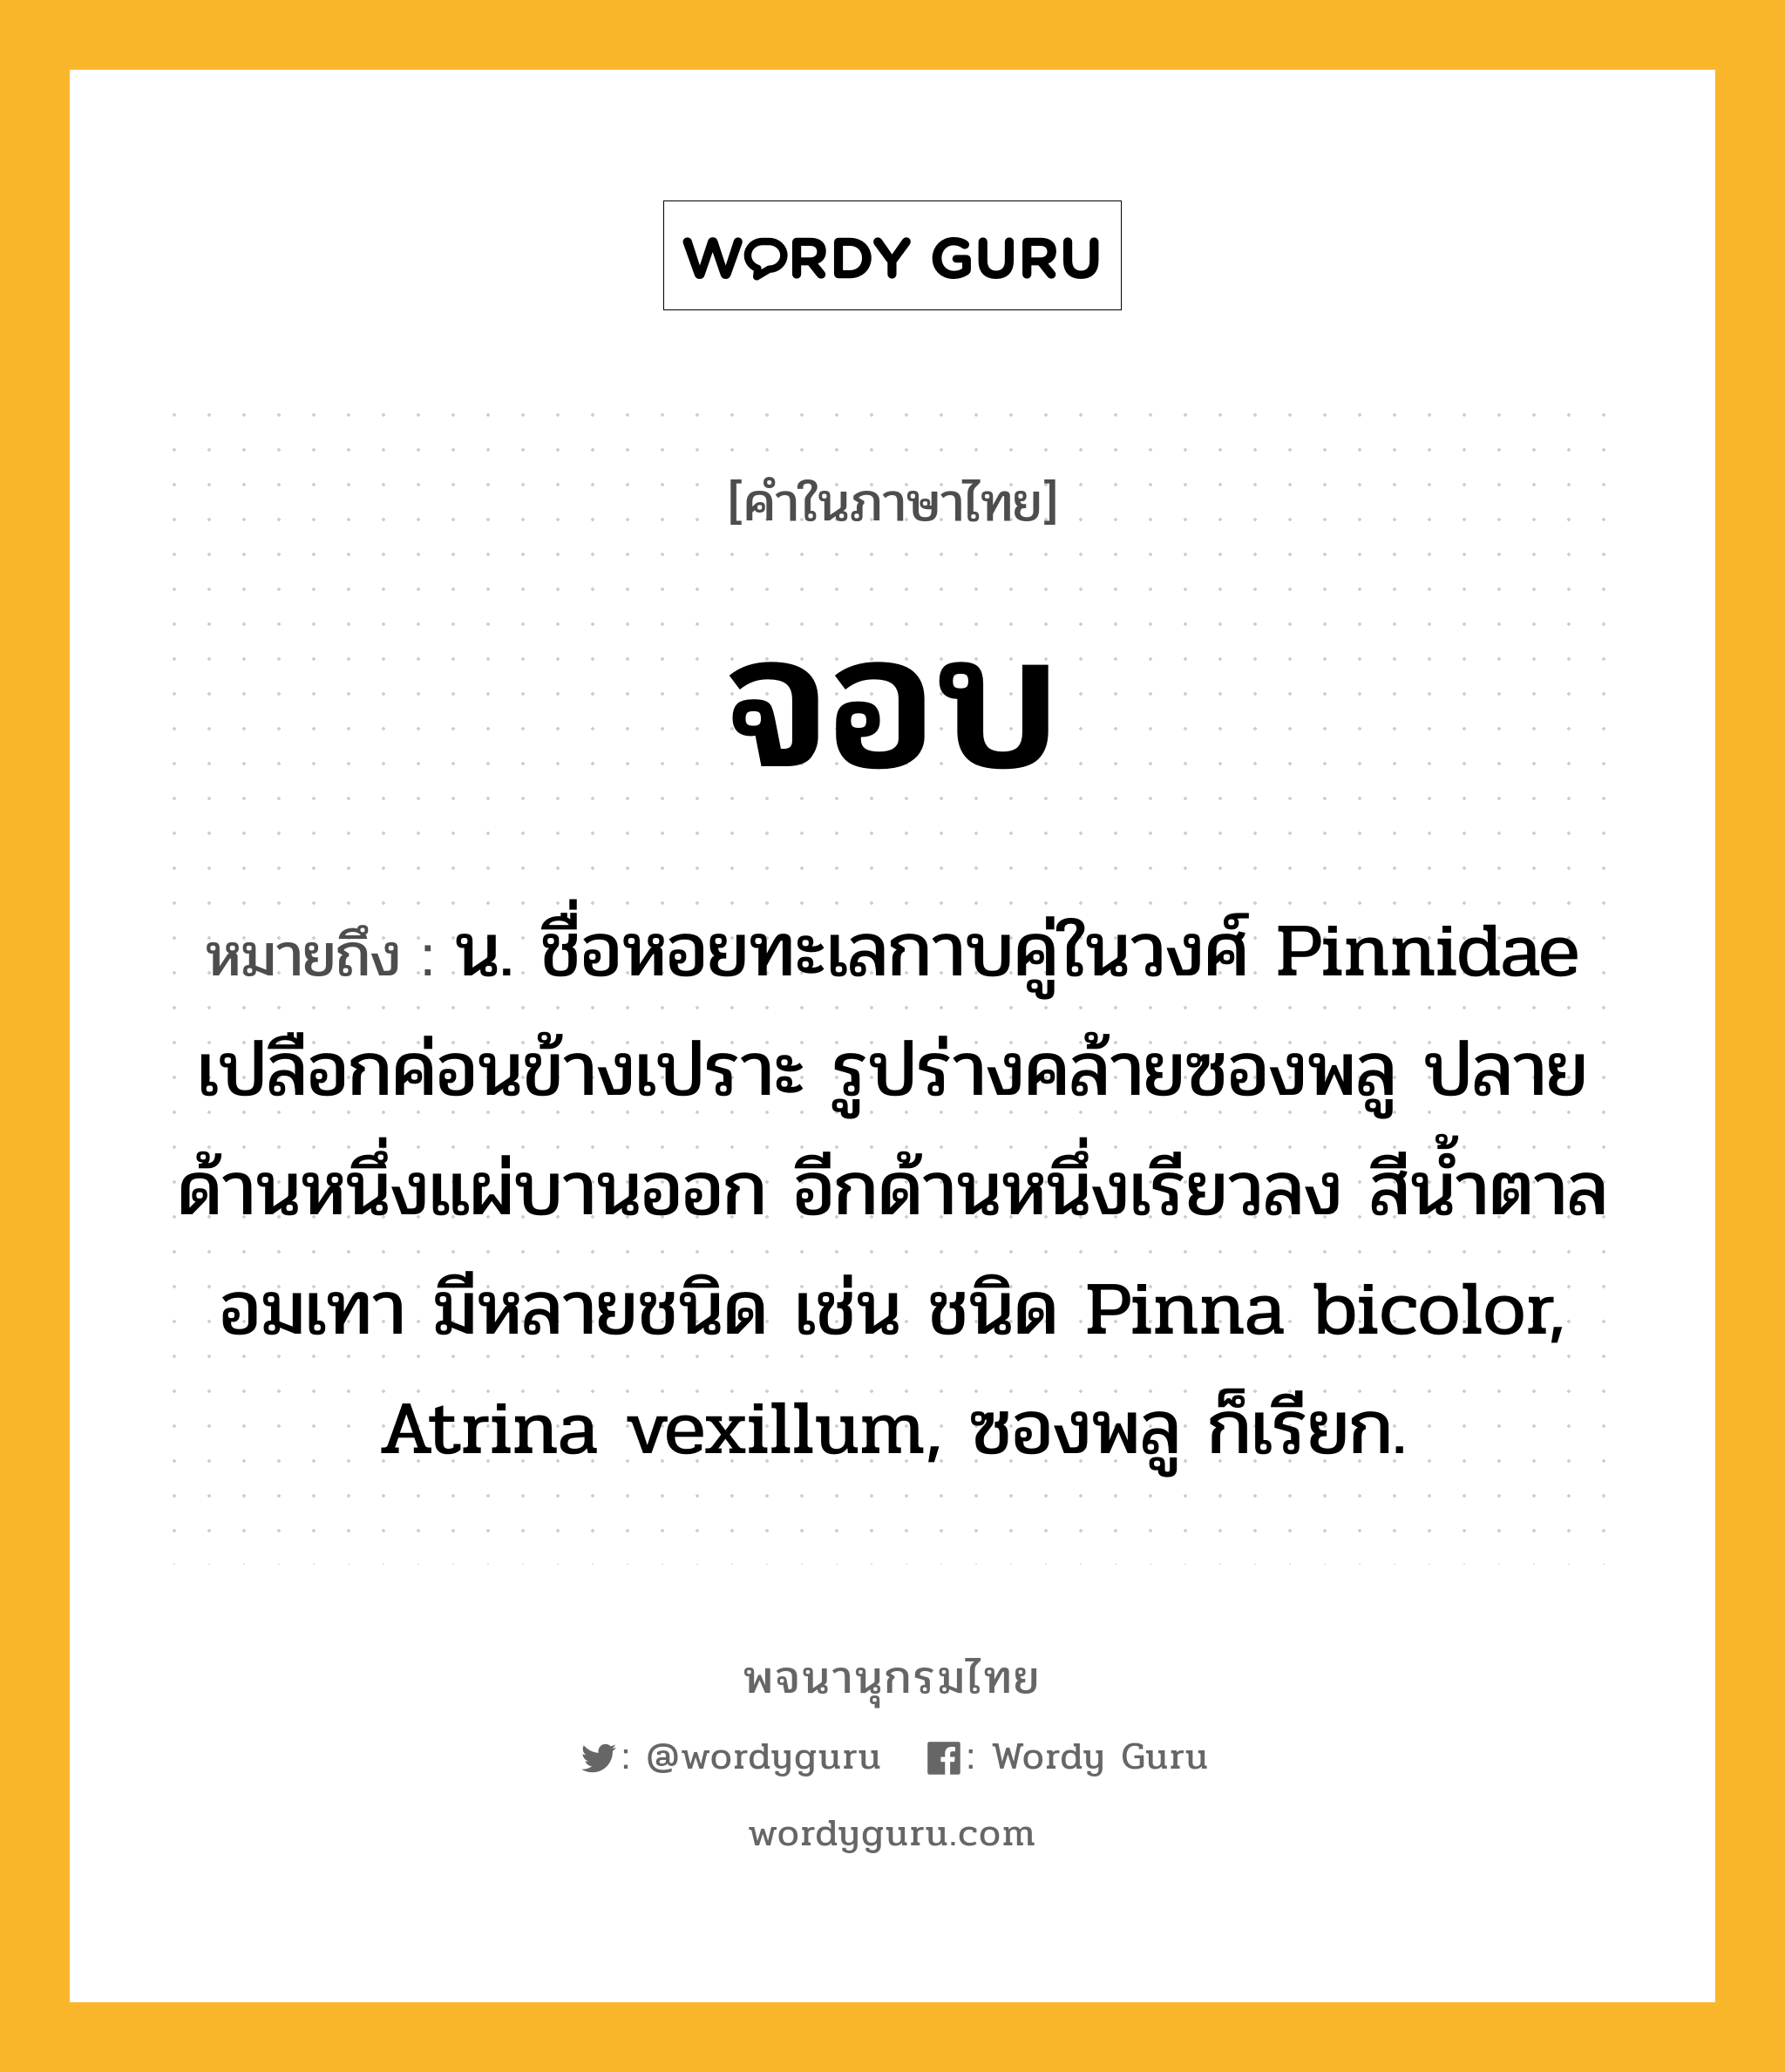 จอบ ความหมาย หมายถึงอะไร?, คำในภาษาไทย จอบ หมายถึง น. ชื่อหอยทะเลกาบคู่ในวงศ์ Pinnidae เปลือกค่อนข้างเปราะ รูปร่างคล้ายซองพลู ปลายด้านหนึ่งแผ่บานออก อีกด้านหนึ่งเรียวลง สีนํ้าตาลอมเทา มีหลายชนิด เช่น ชนิด Pinna bicolor, Atrina vexillum, ซองพลู ก็เรียก.